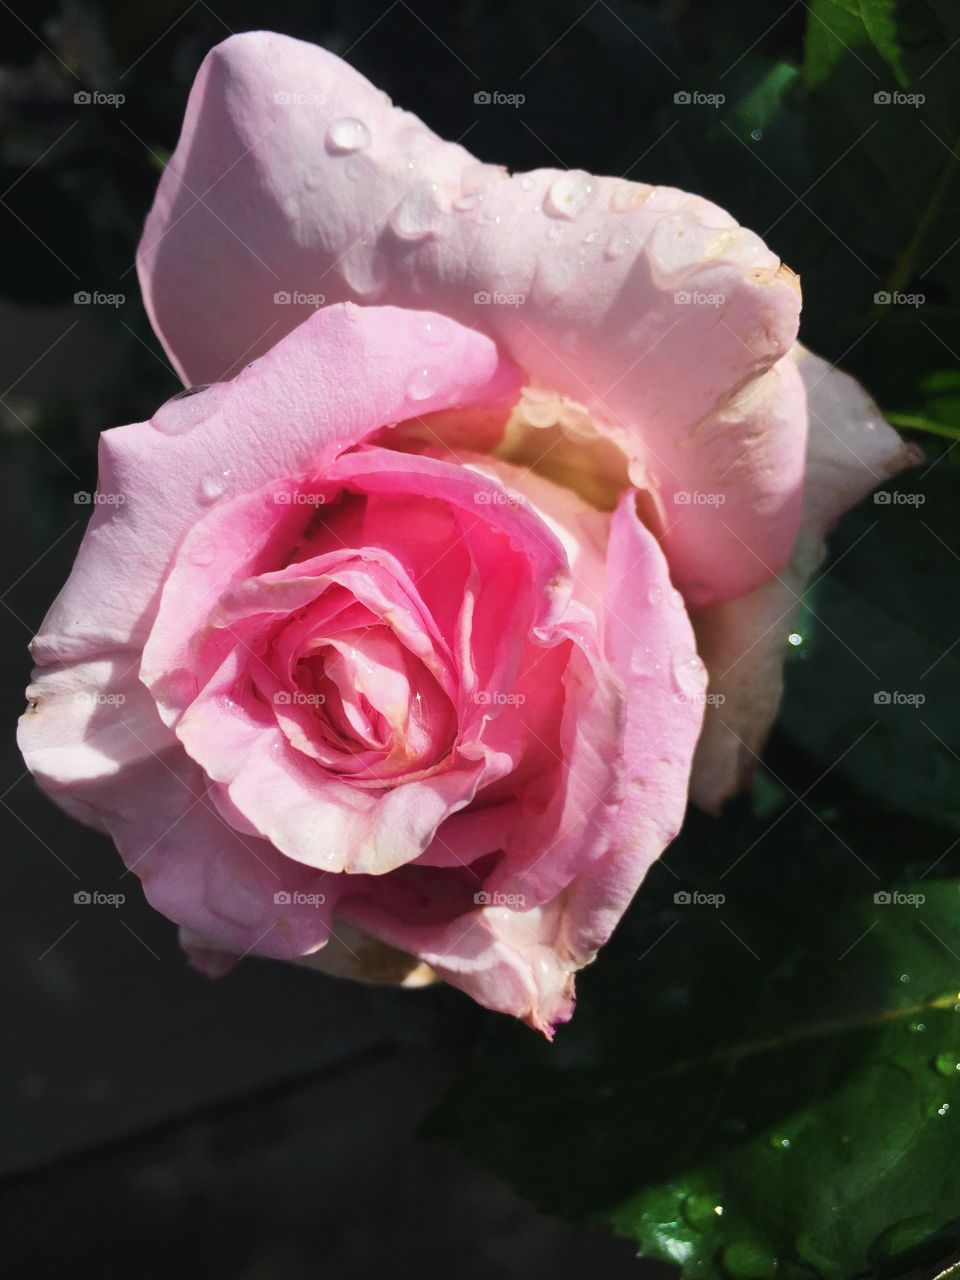 Pretty rose 